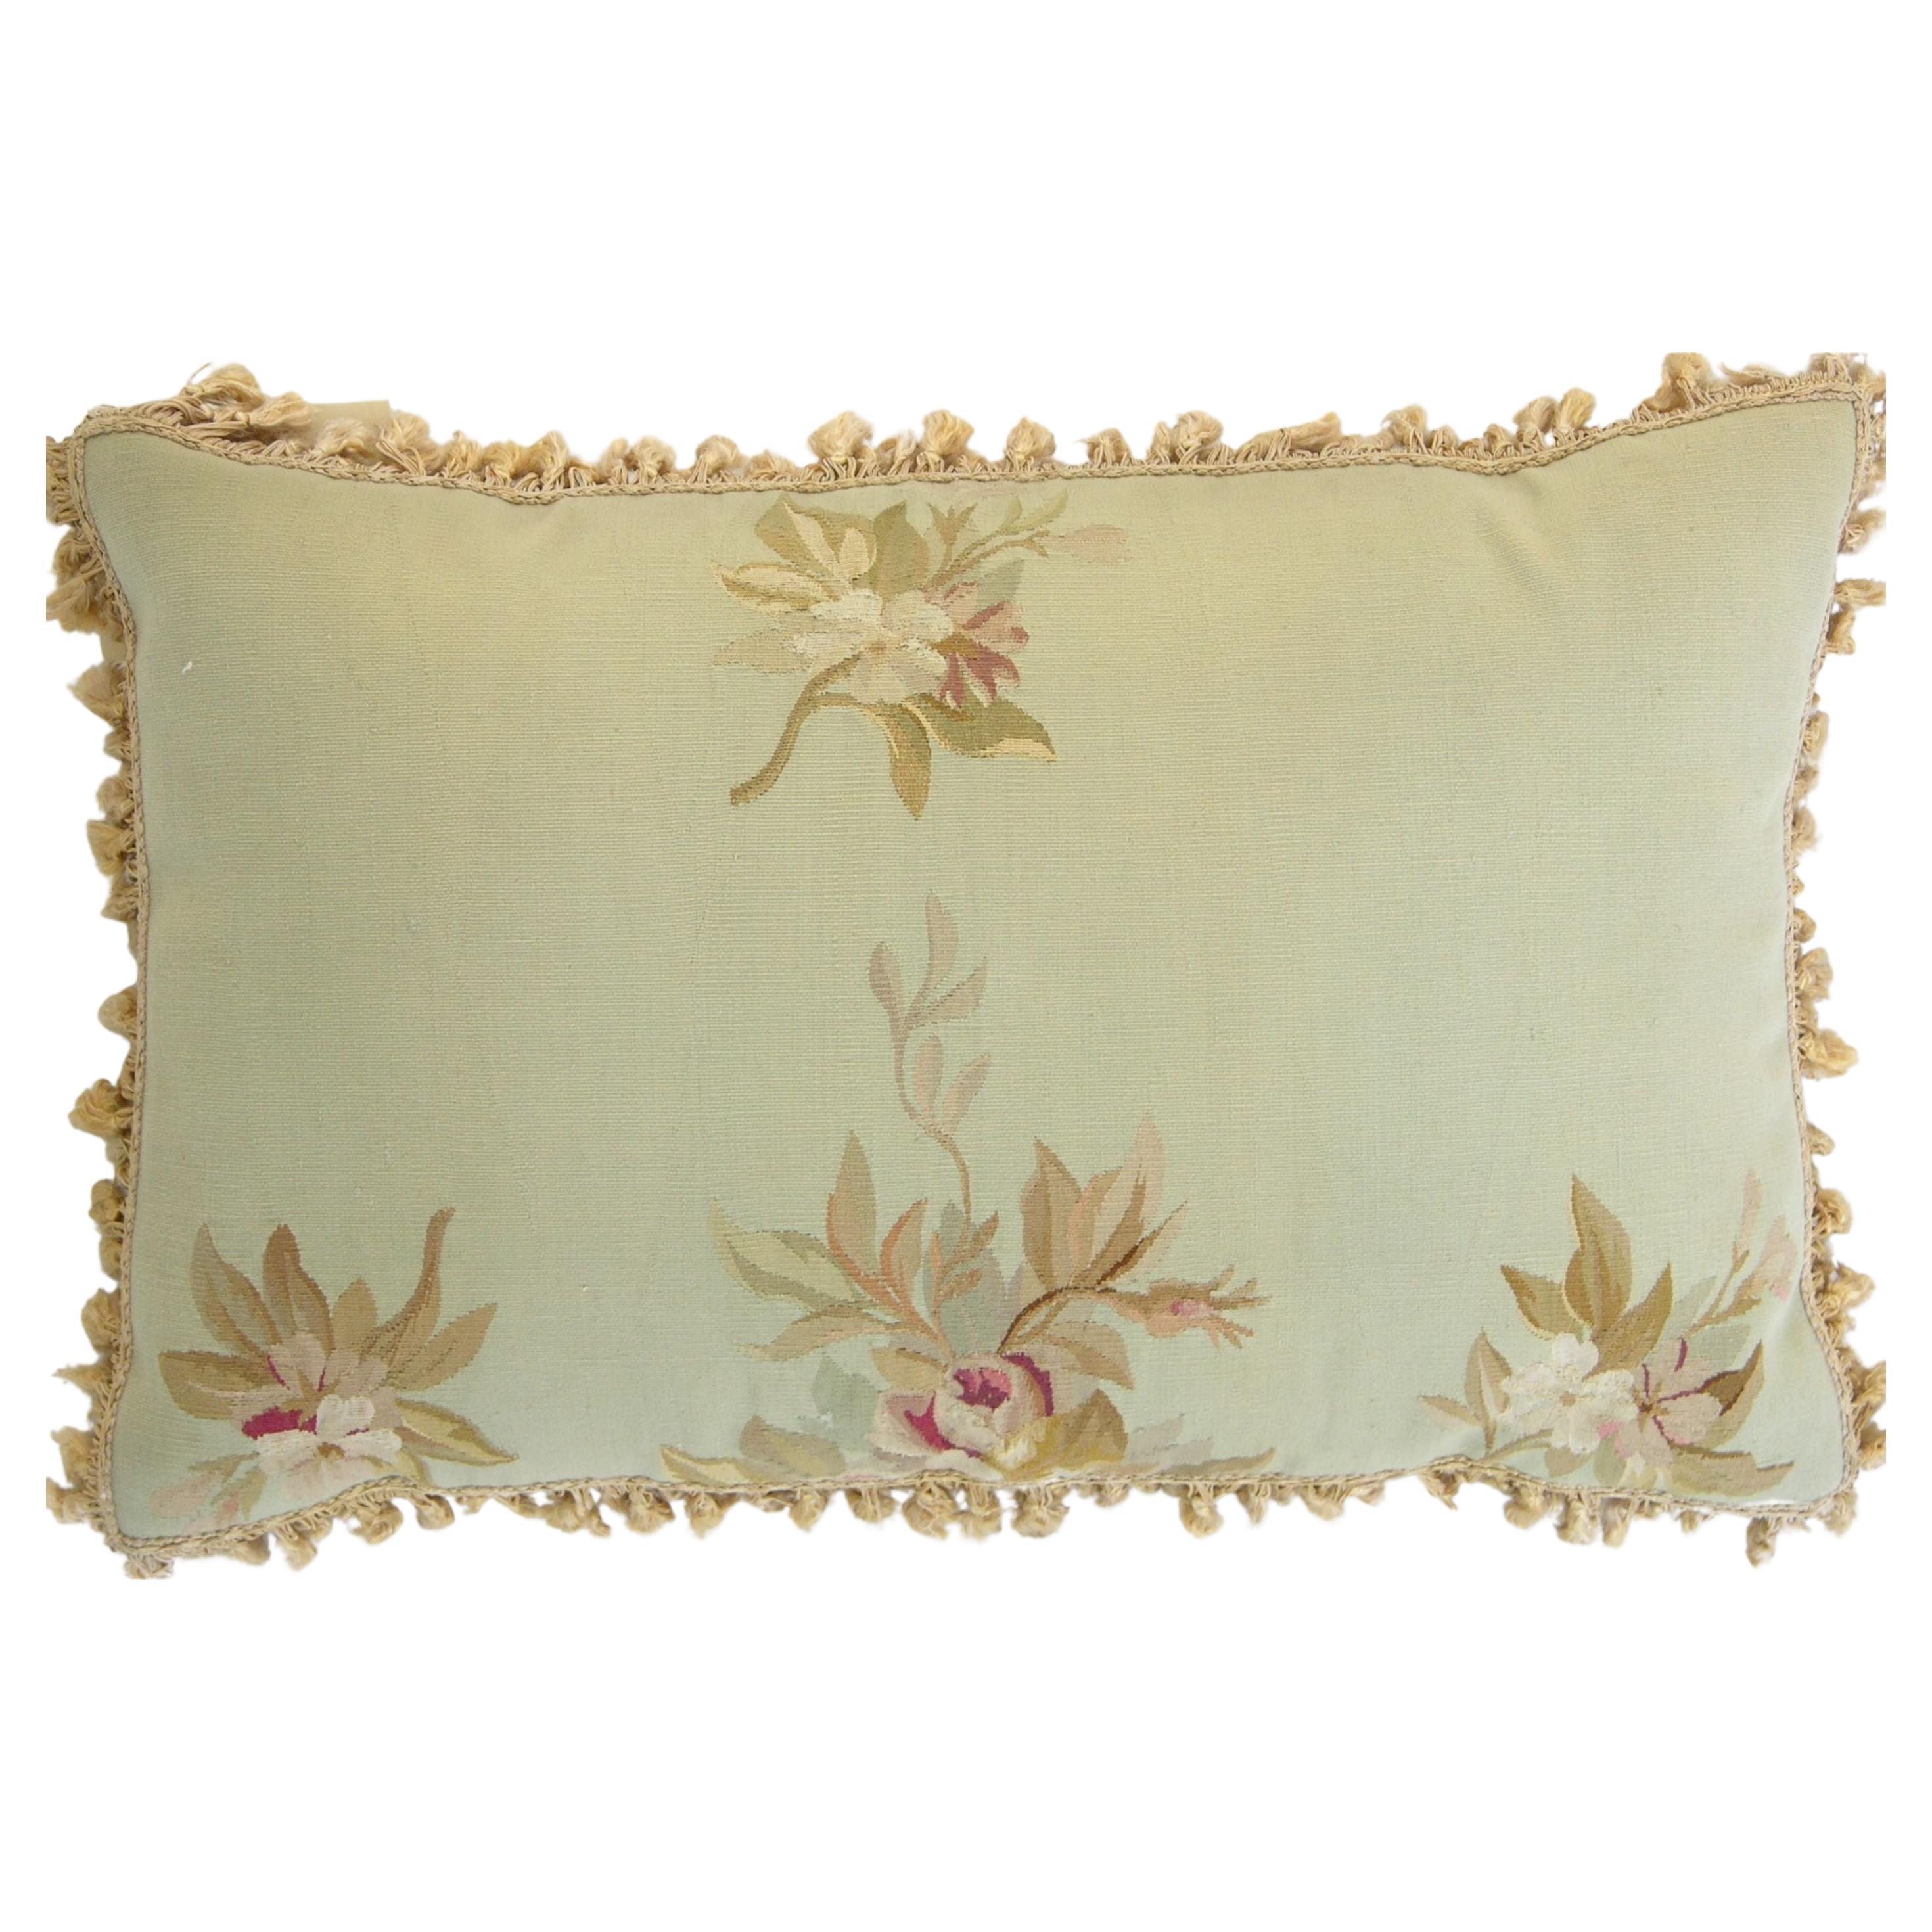 Circa 1850 Antique French Pillow